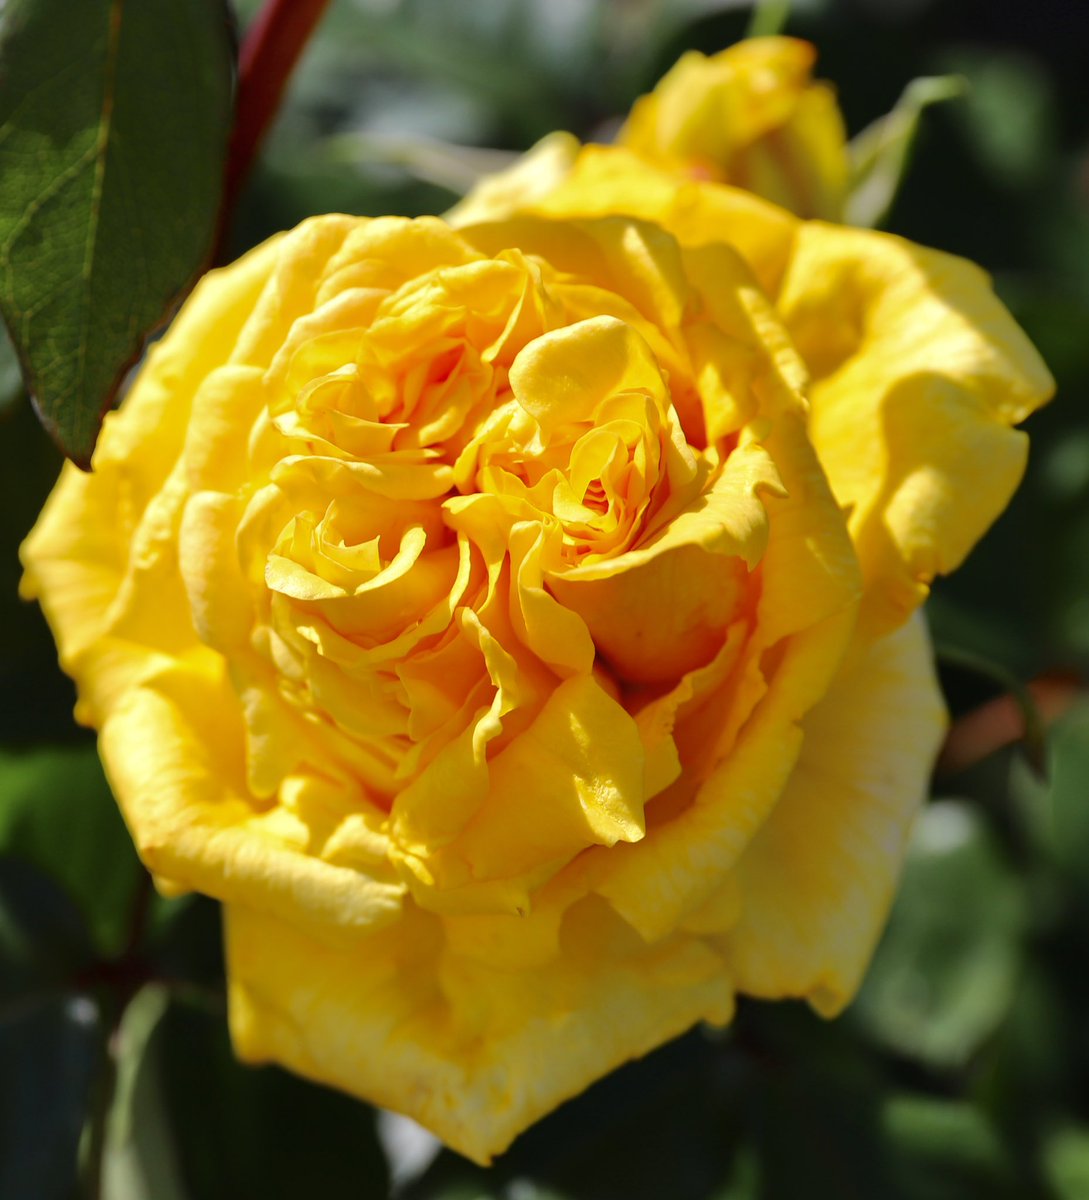 バラ🌹あゆみ🌹日本 黄色の花色が葉の緑に映え美しい！ 京成バラ園芸50周年記念のバラ。 名は50年間人々にバラと夢と幸せを届ける為、歩んできた歴史とこれから歩んでゆく未来に願いを込め #バラ #島和太郎 #オフィスアーツ #花 #flowers #庭園 #スイーツ #CM #タレント #モデル #朝 #空…